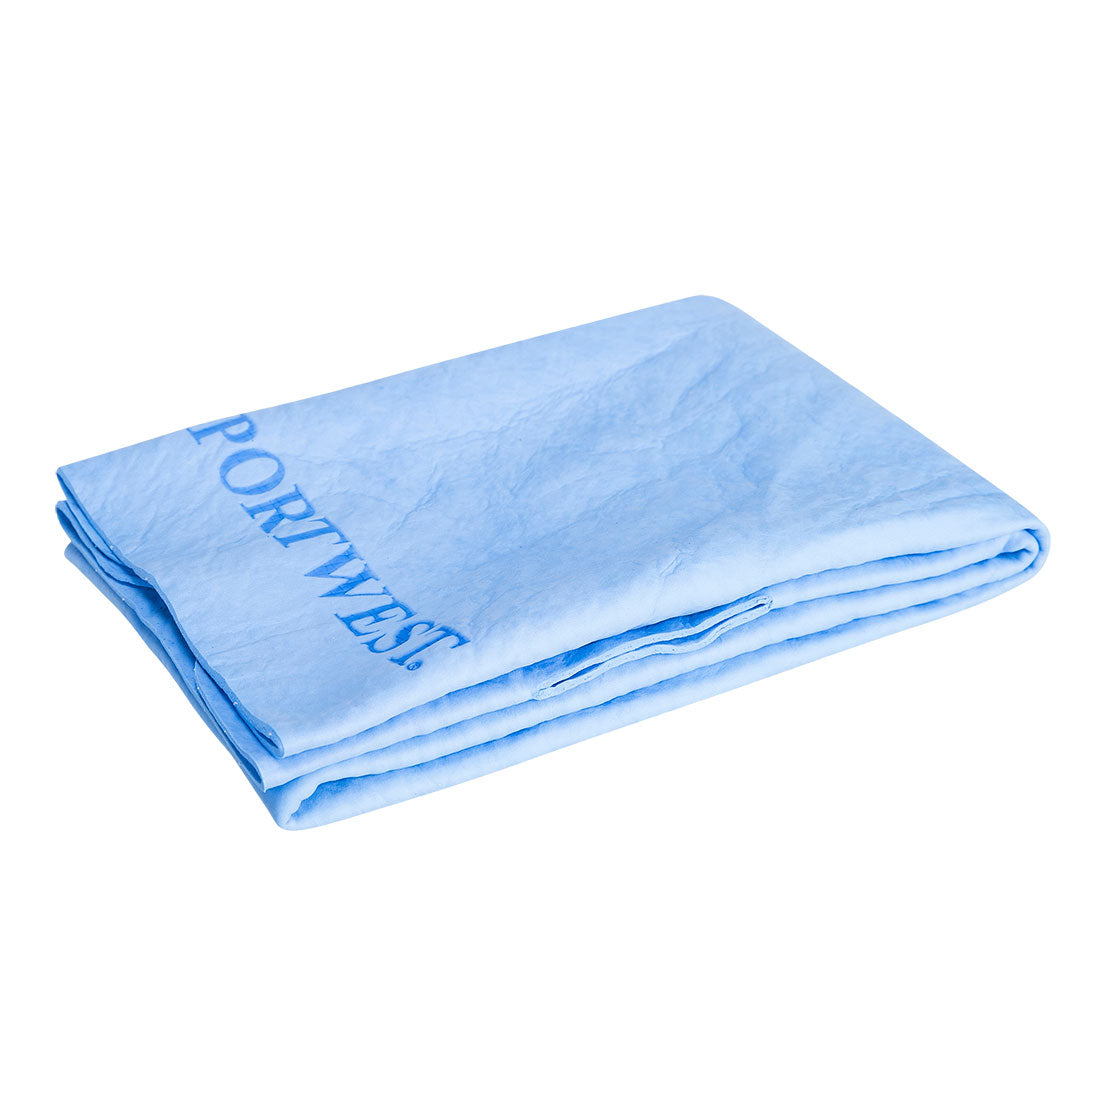 CV06 - Cooling Towel Blue